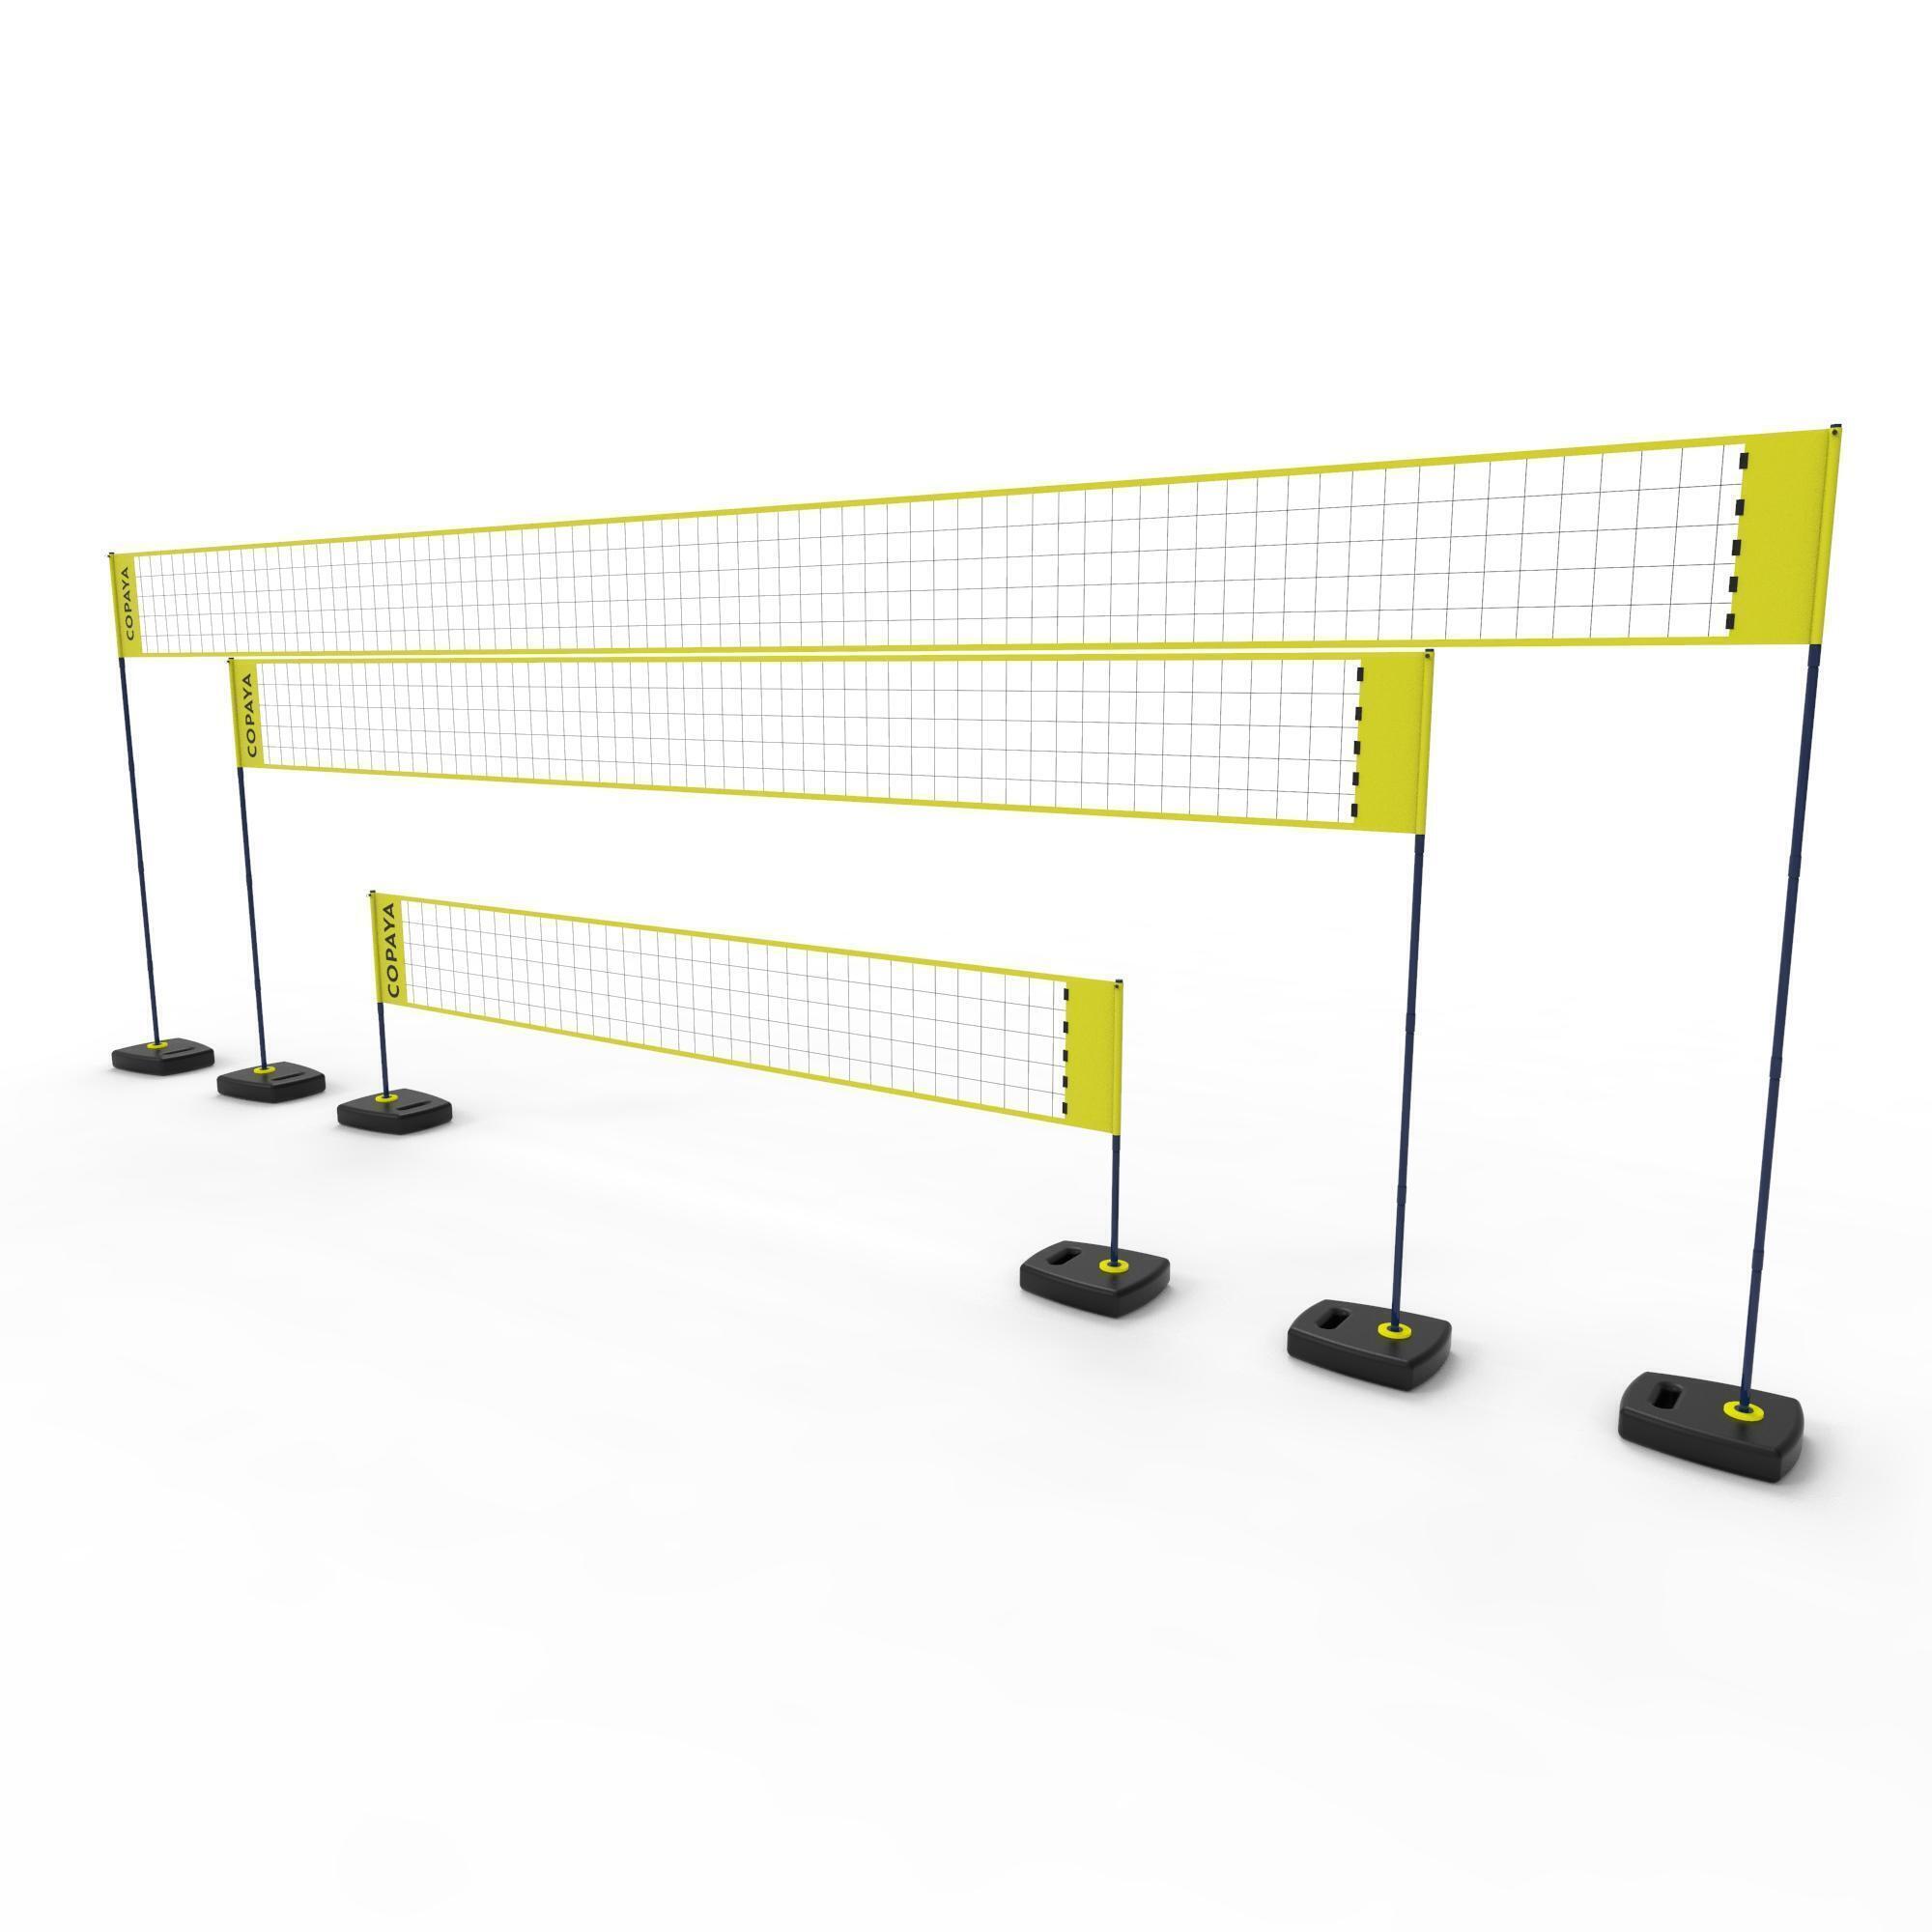 Сетка для пляжного волейбола регулируемая BV500 желтая COPAYA, желтый черный плата bv500 s type002 rev00 16020297